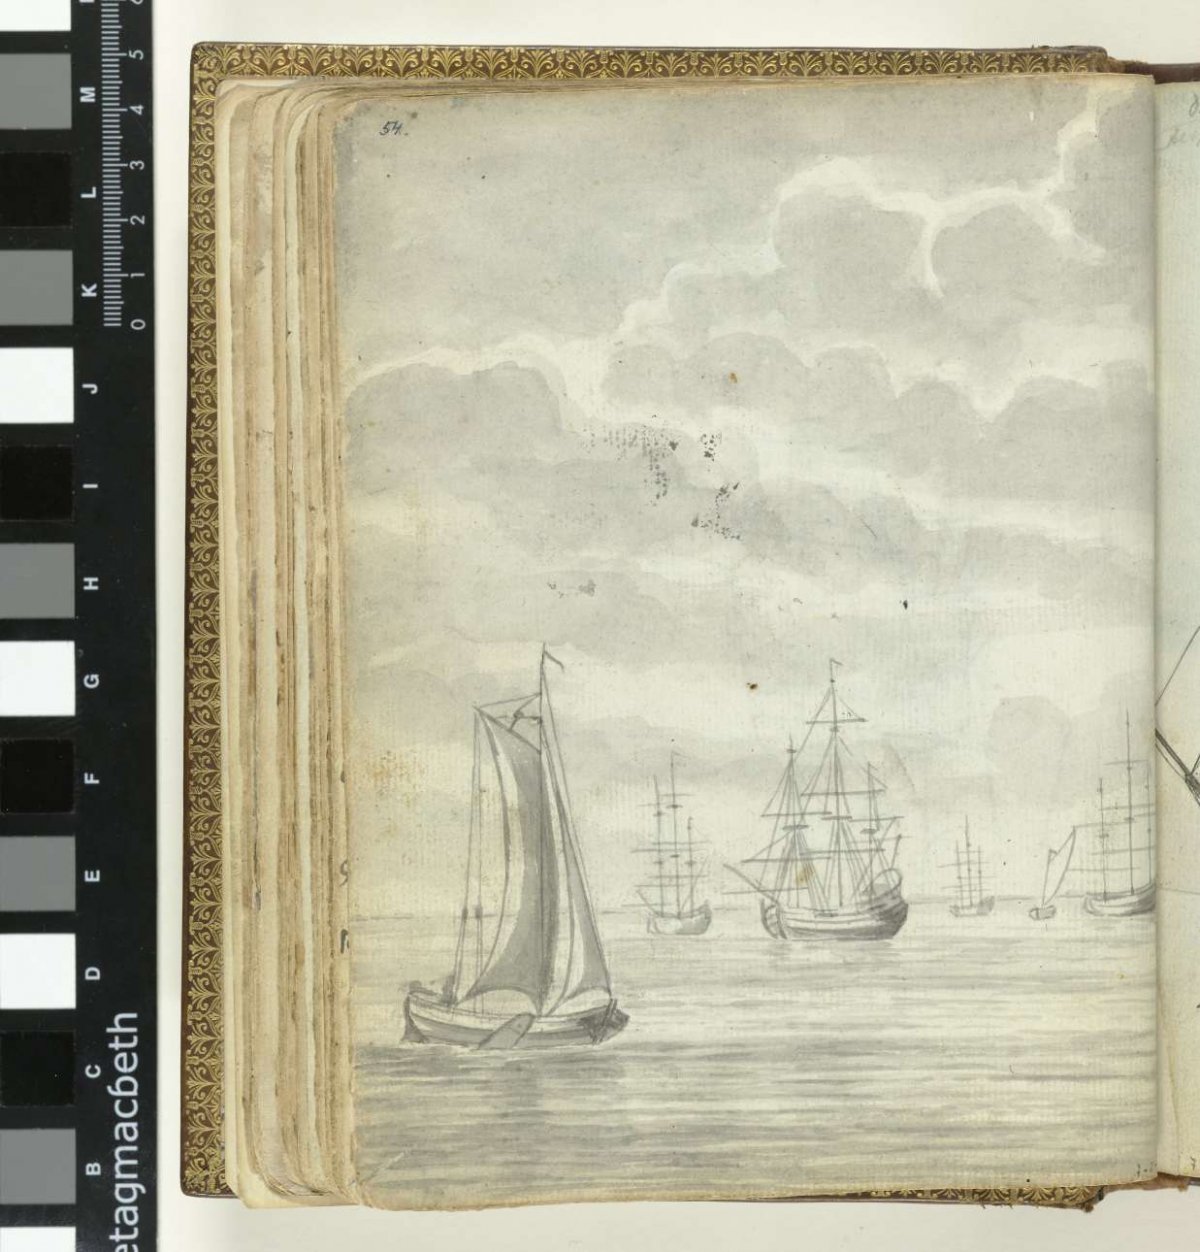 Ships at anchor, Jan Brandes, 1779 - 1787